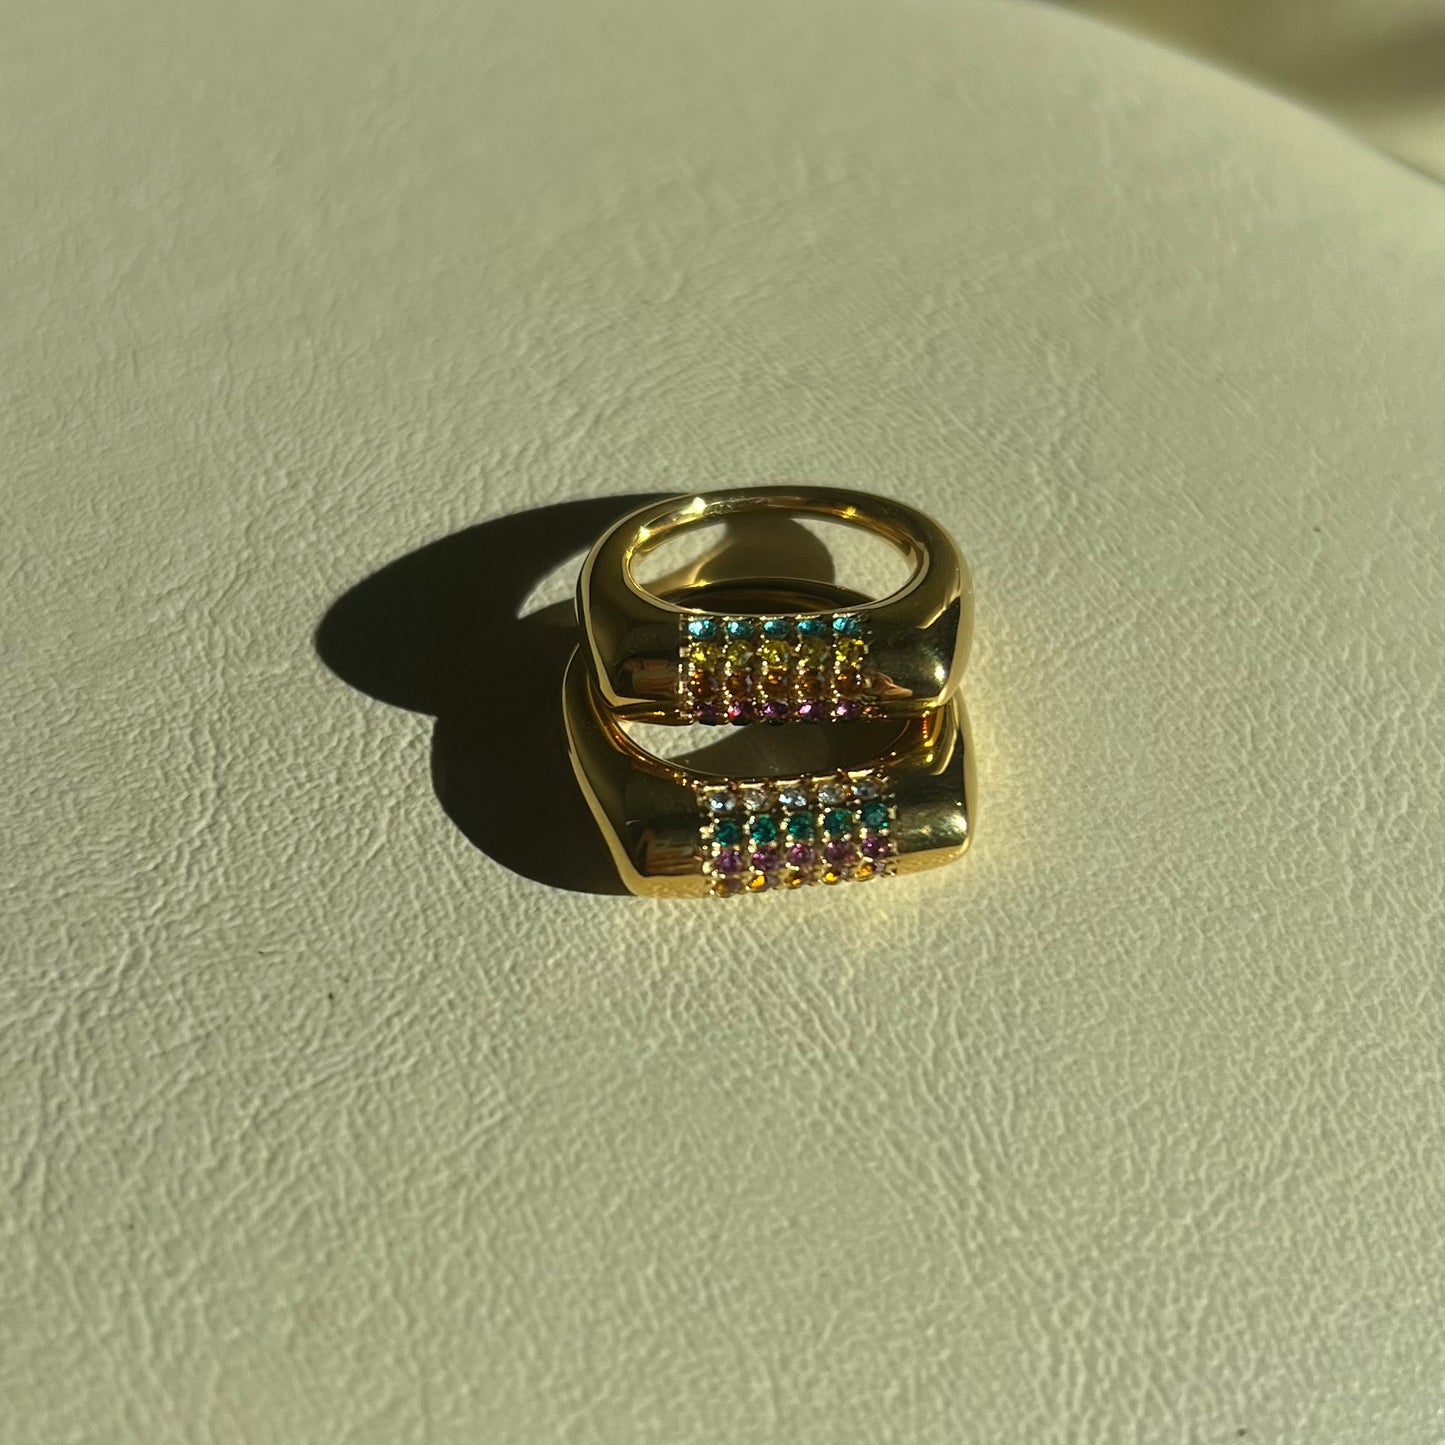 Shiny rainbow ring